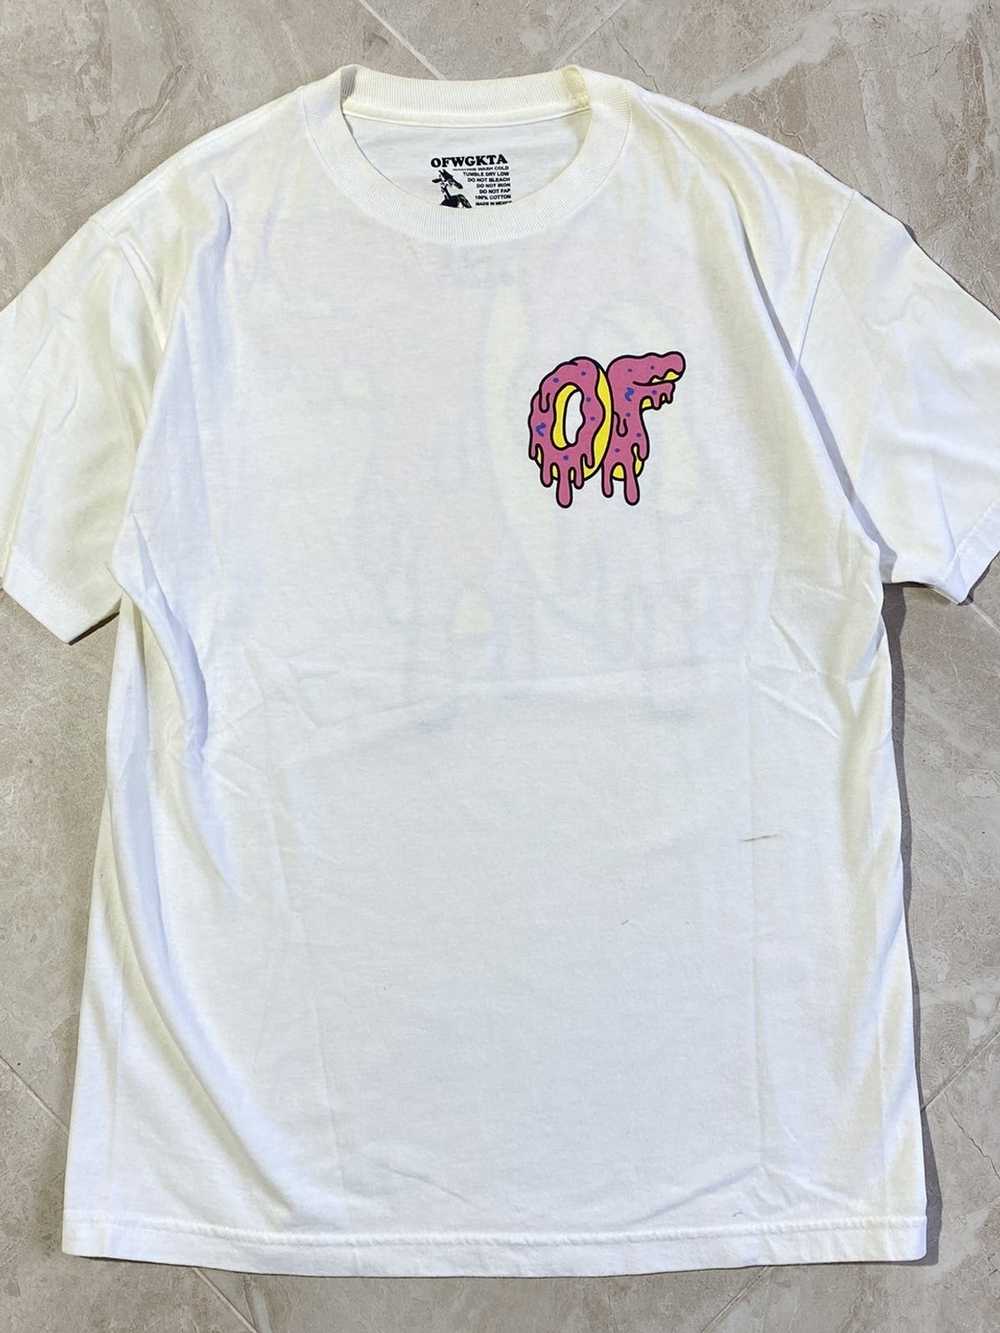 Odd Future × Streetwear OFWGKTA Odd Future t-shirt - image 3